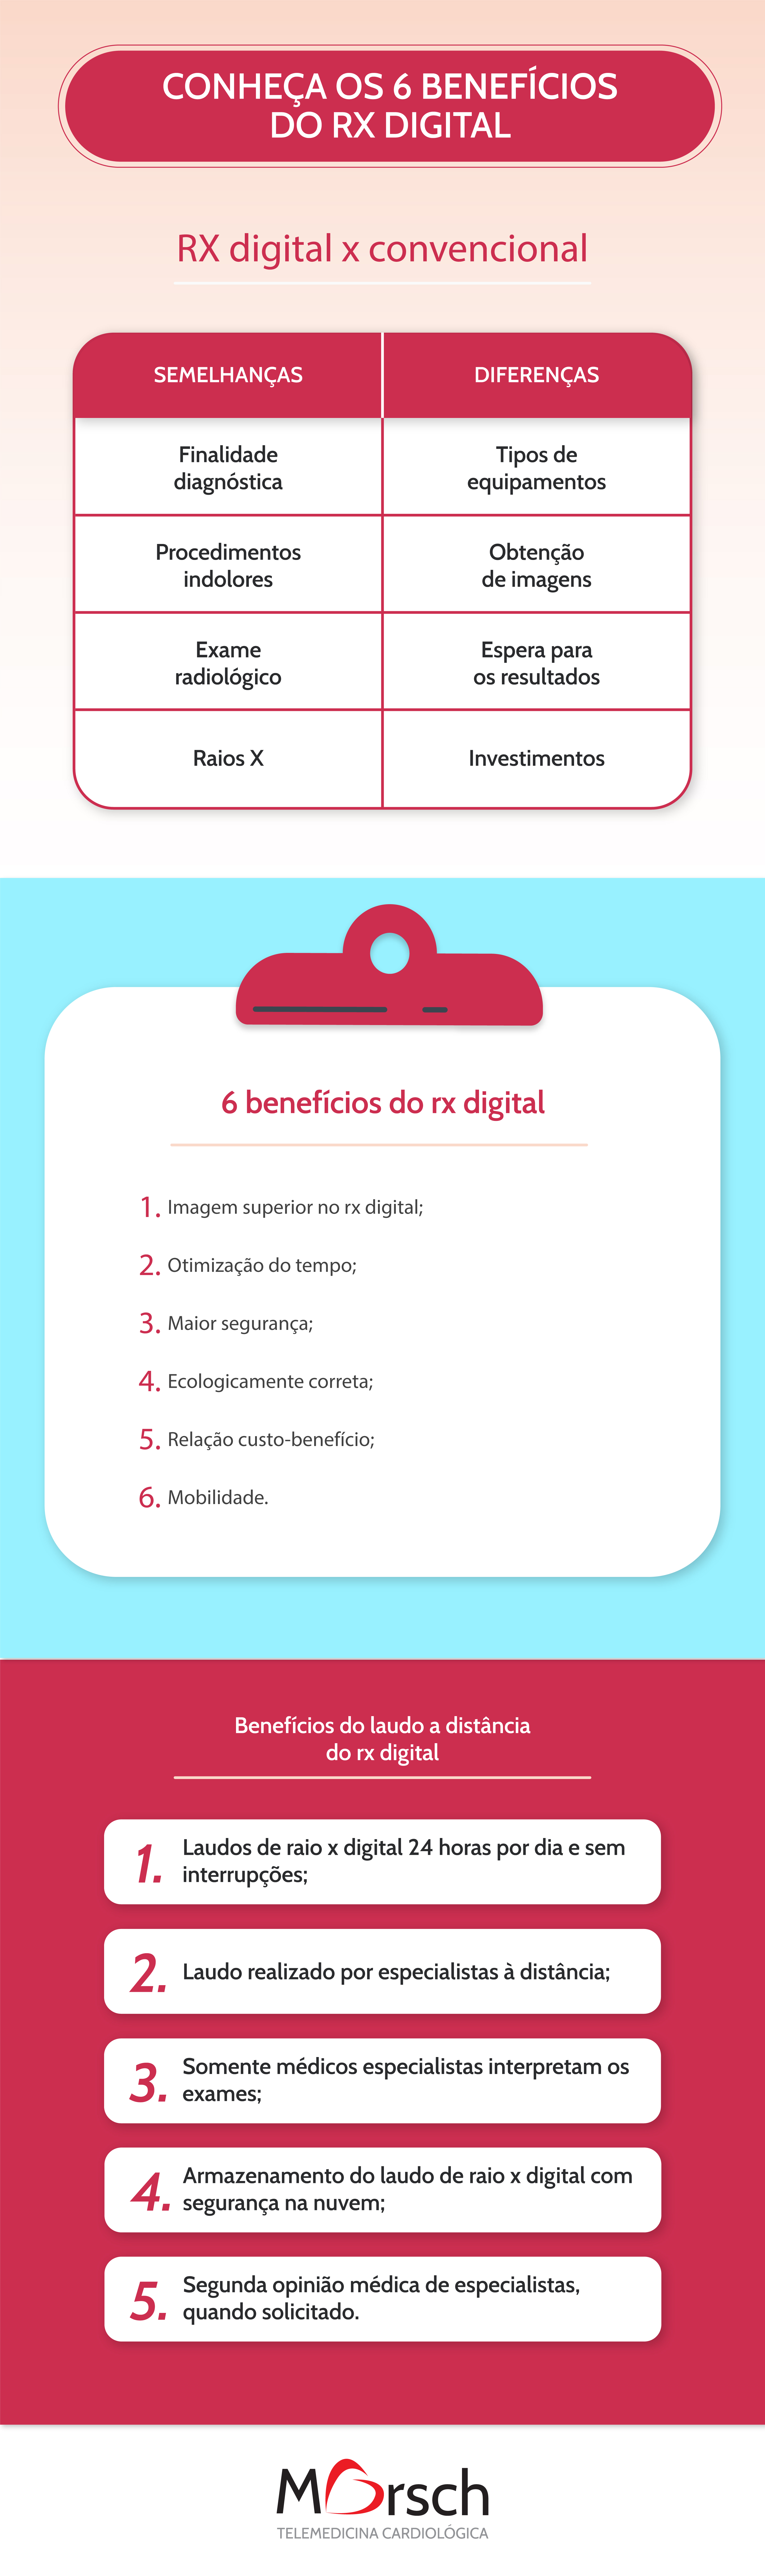 Conheça os 6 benefícios do rx digital